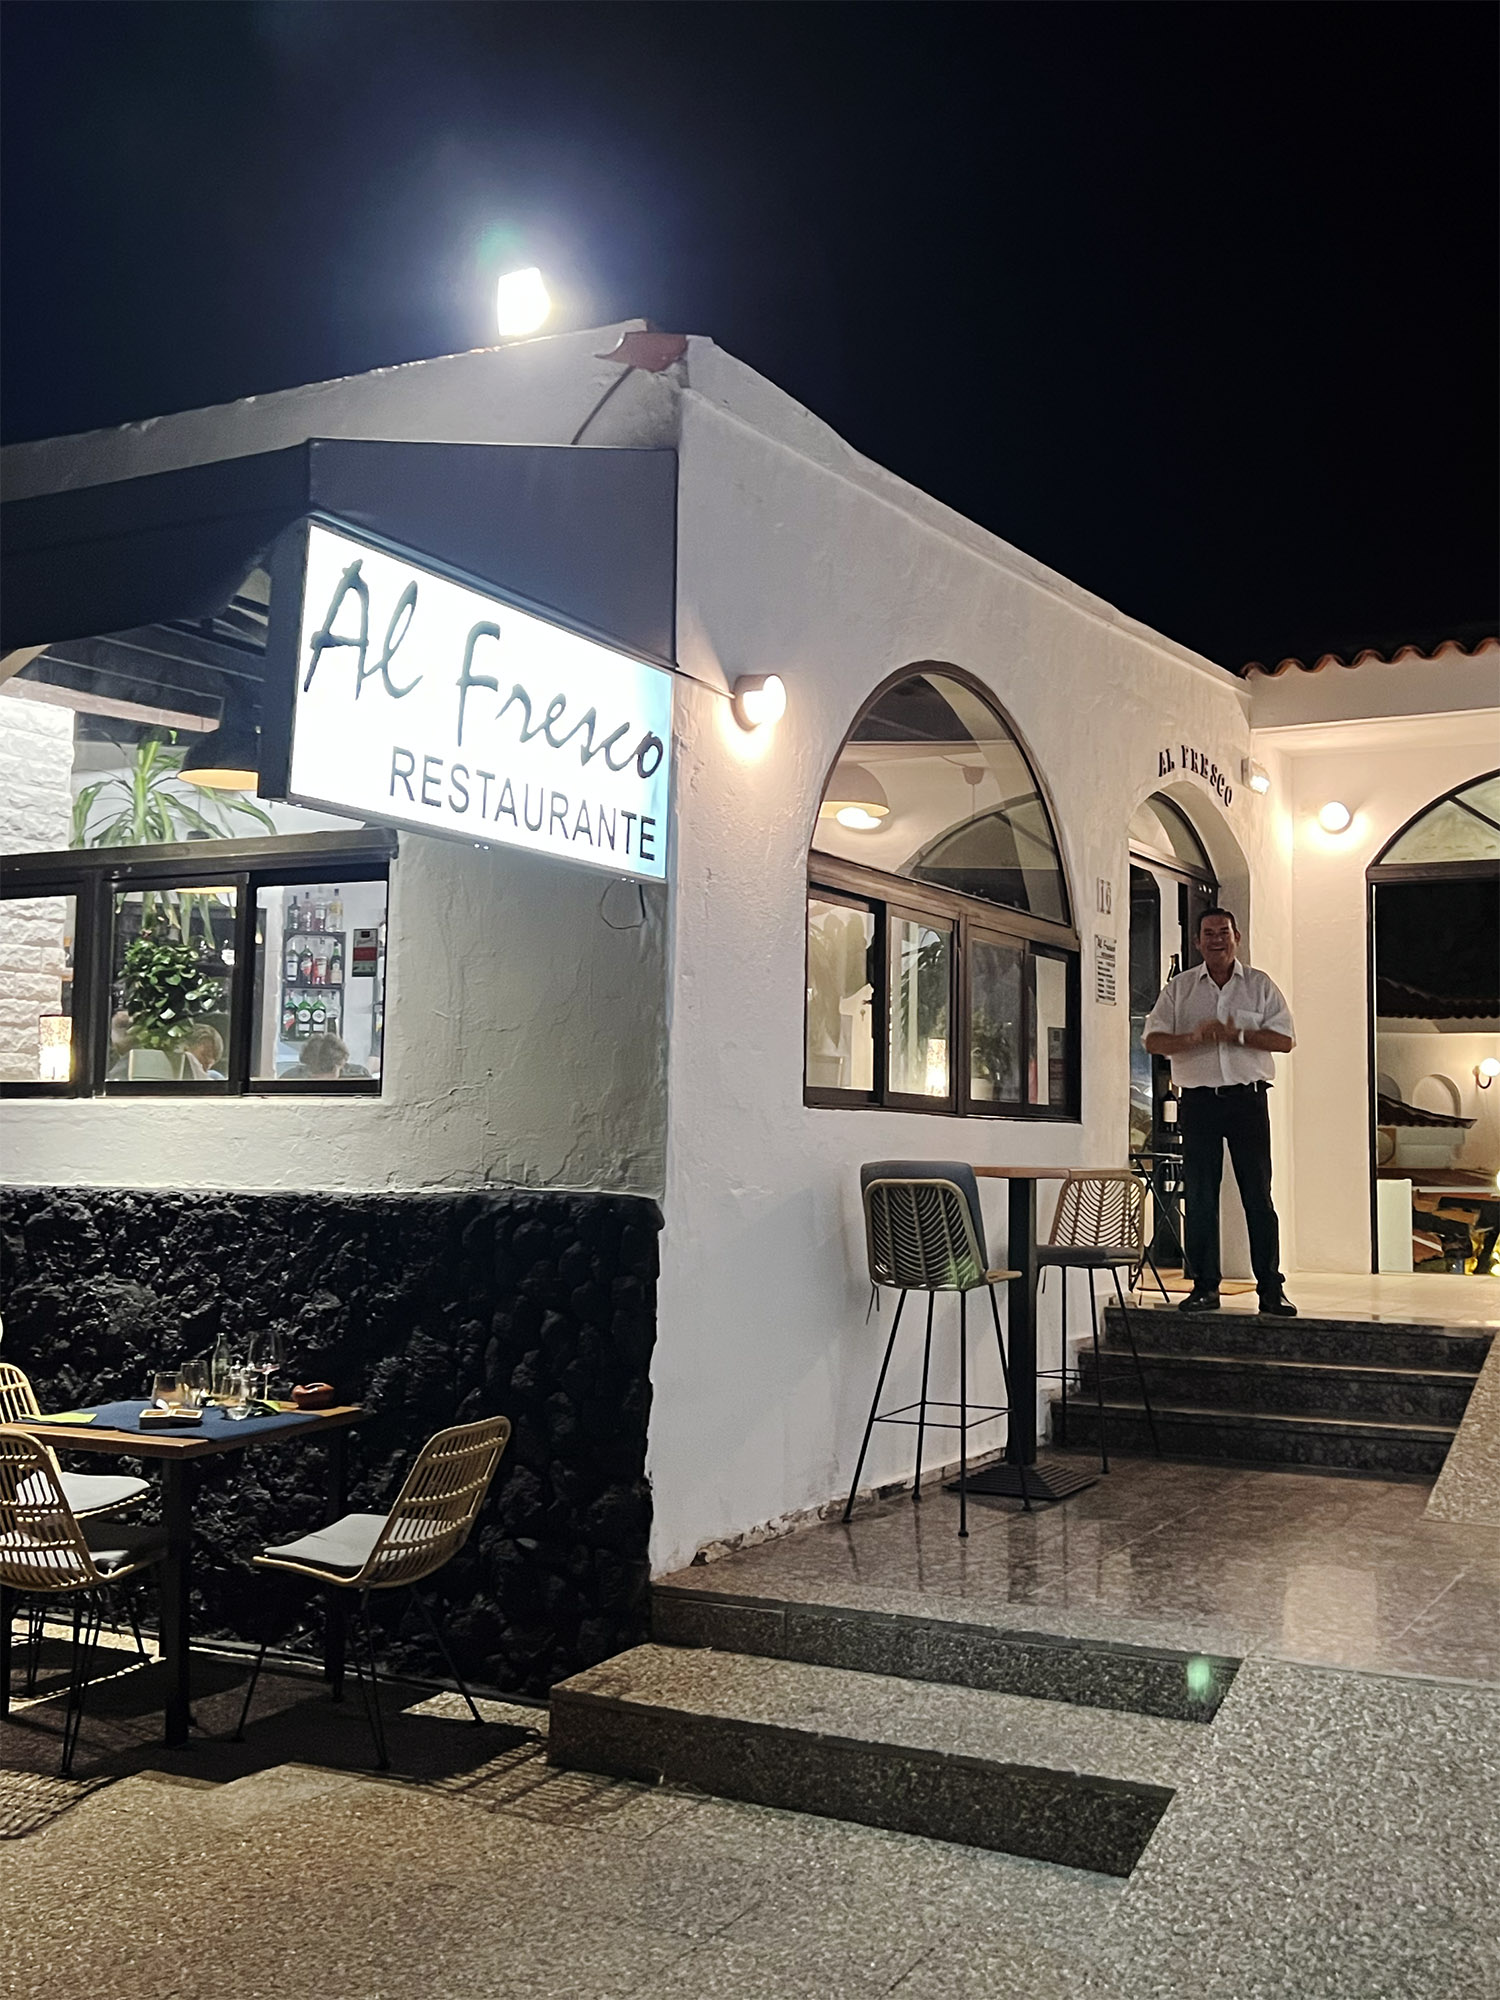 Fuerteventura: Al Fresco - Nice new restaurant in Costa Calma